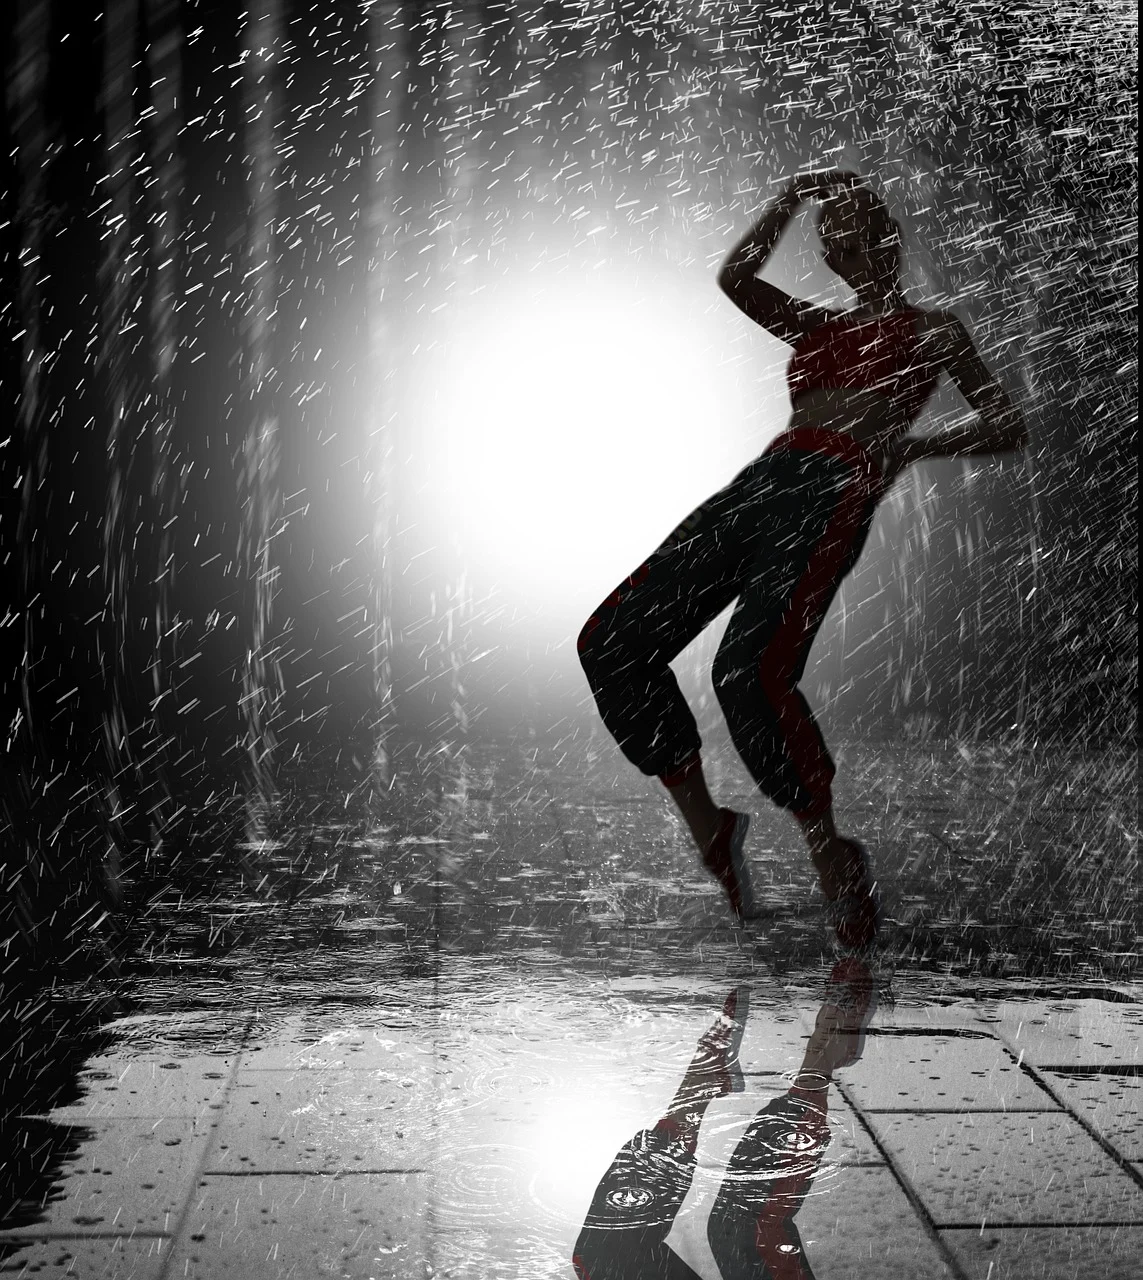 Hintergrundbild im Regen tanzen: Ein Mensch tanzt im Regen und lässt sich von den Regentropfen umhüllen. Das Bild ist eher dunkel, jedoch wird die Szene von hinten durch ein helles Licht oder einen Scheinwerfer erleuchtet, was einen kontrastreichen Effekt erzeugt.